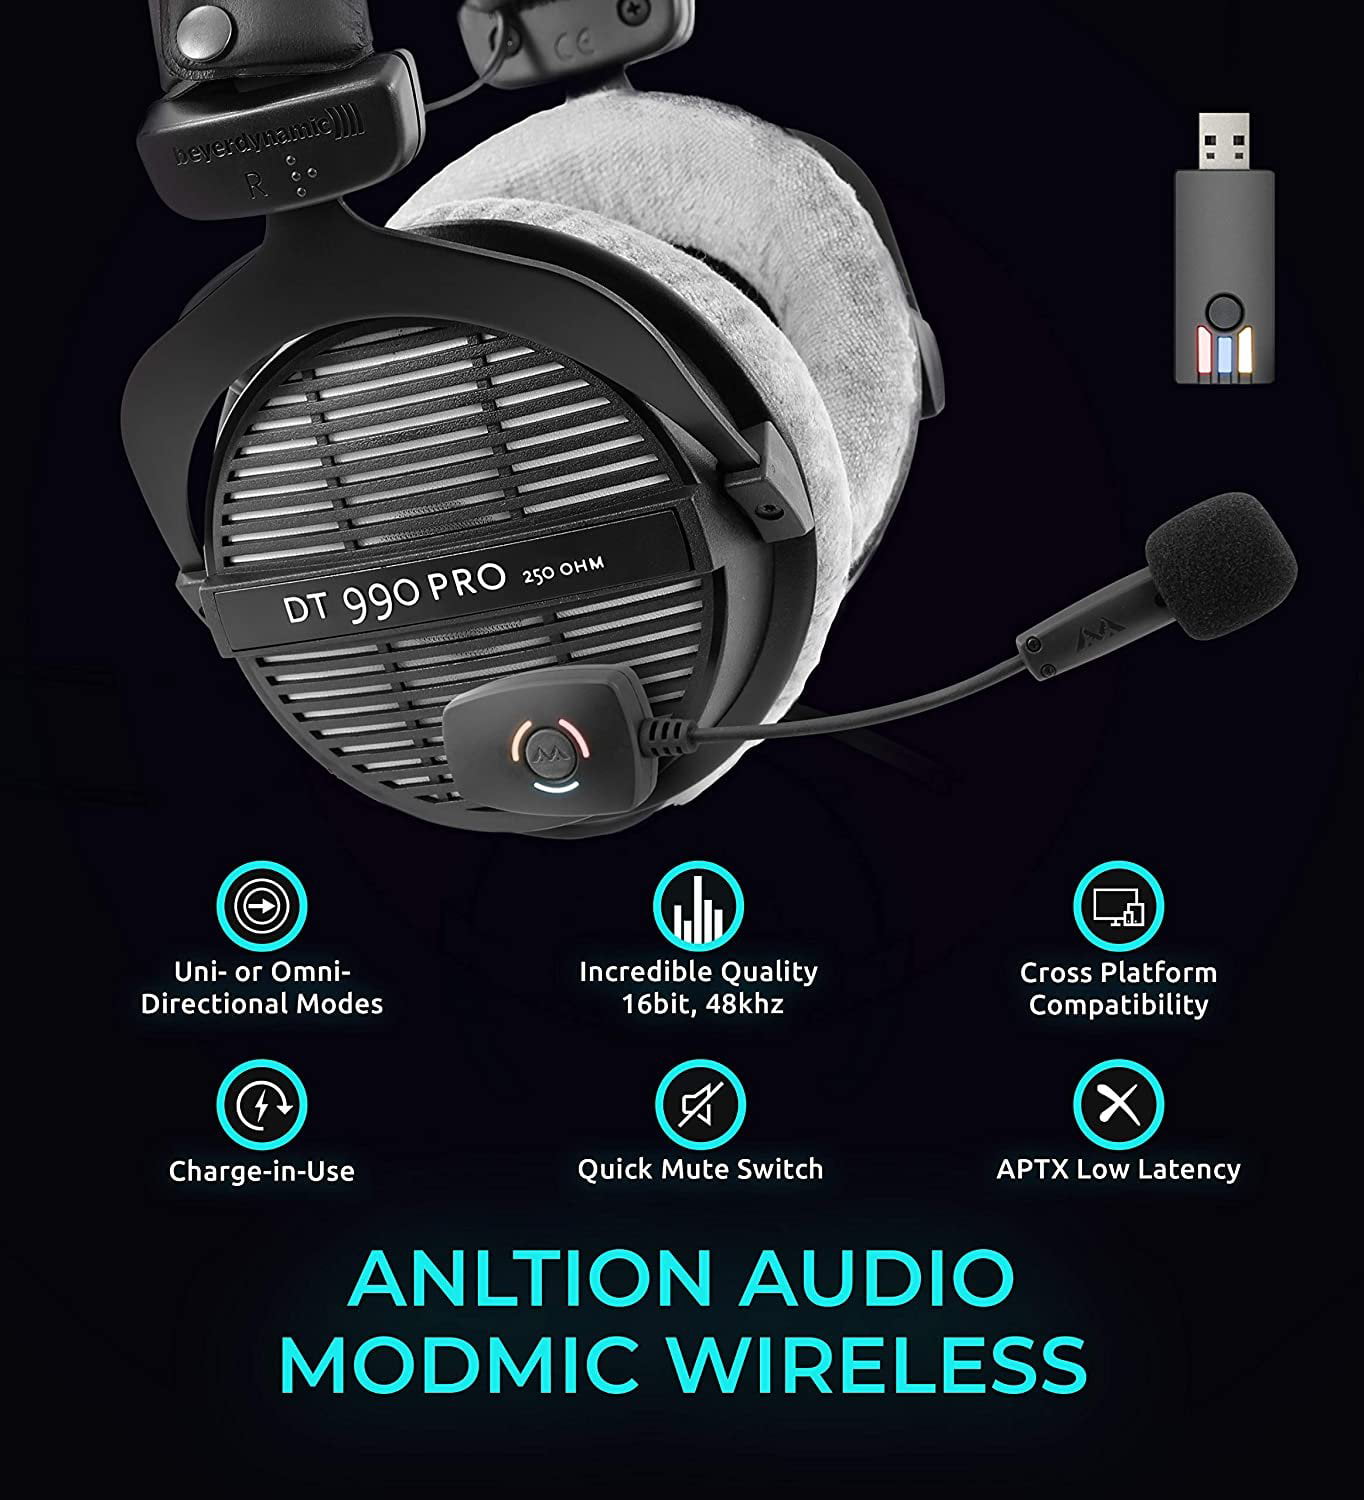 DT990 Pro Bundle – Antlion Audio